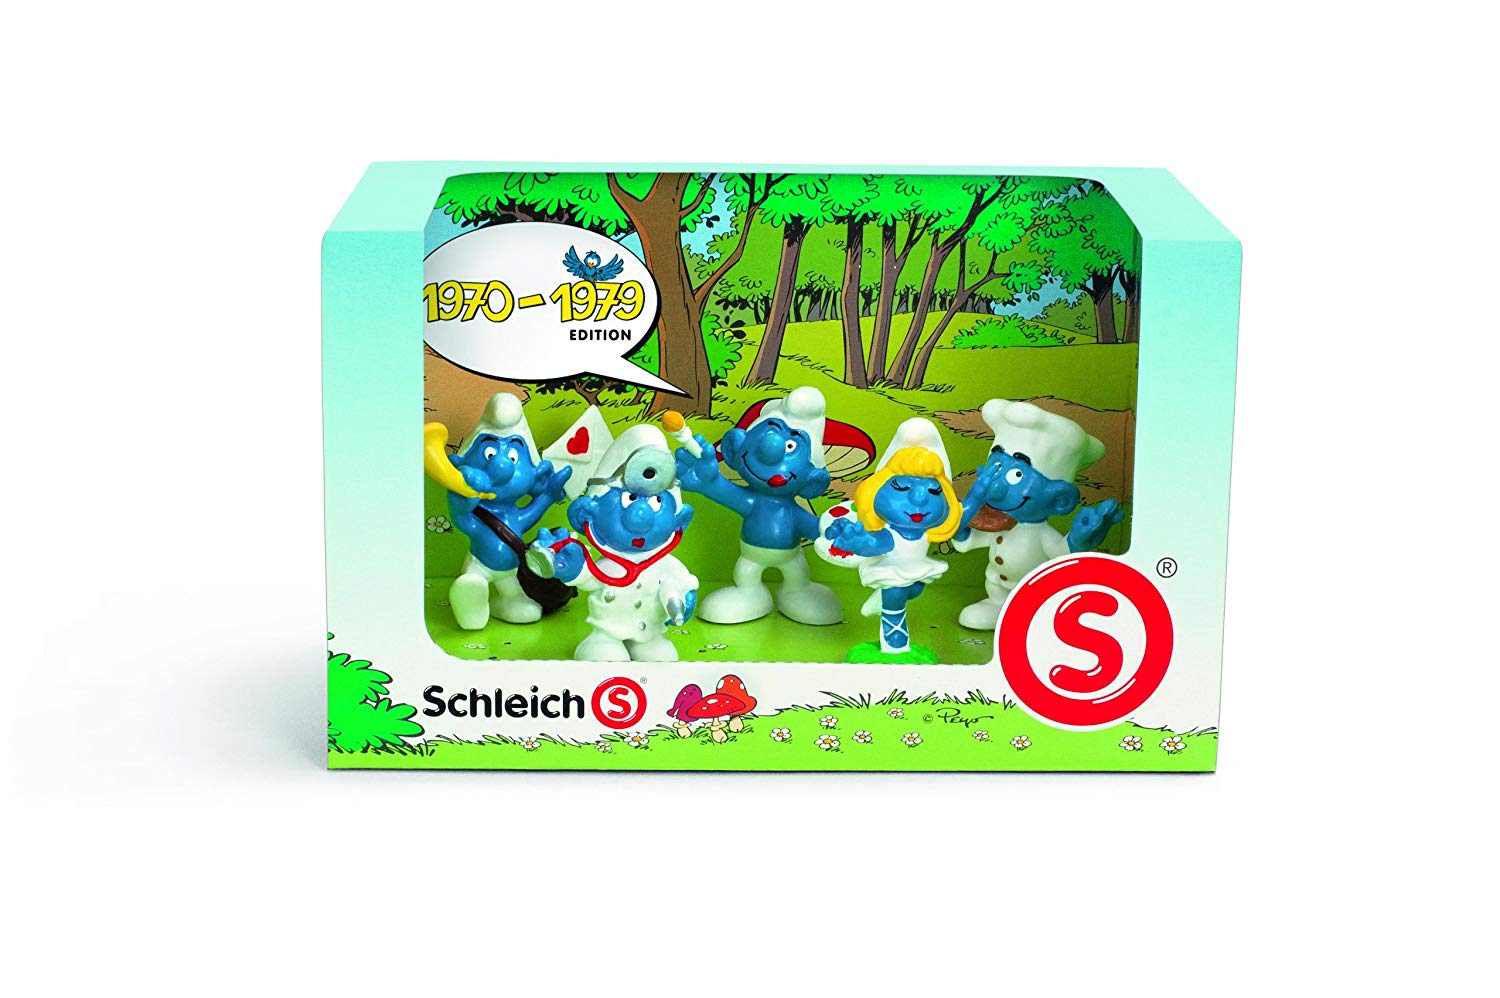 Schleich Smurf Set 1970-1979